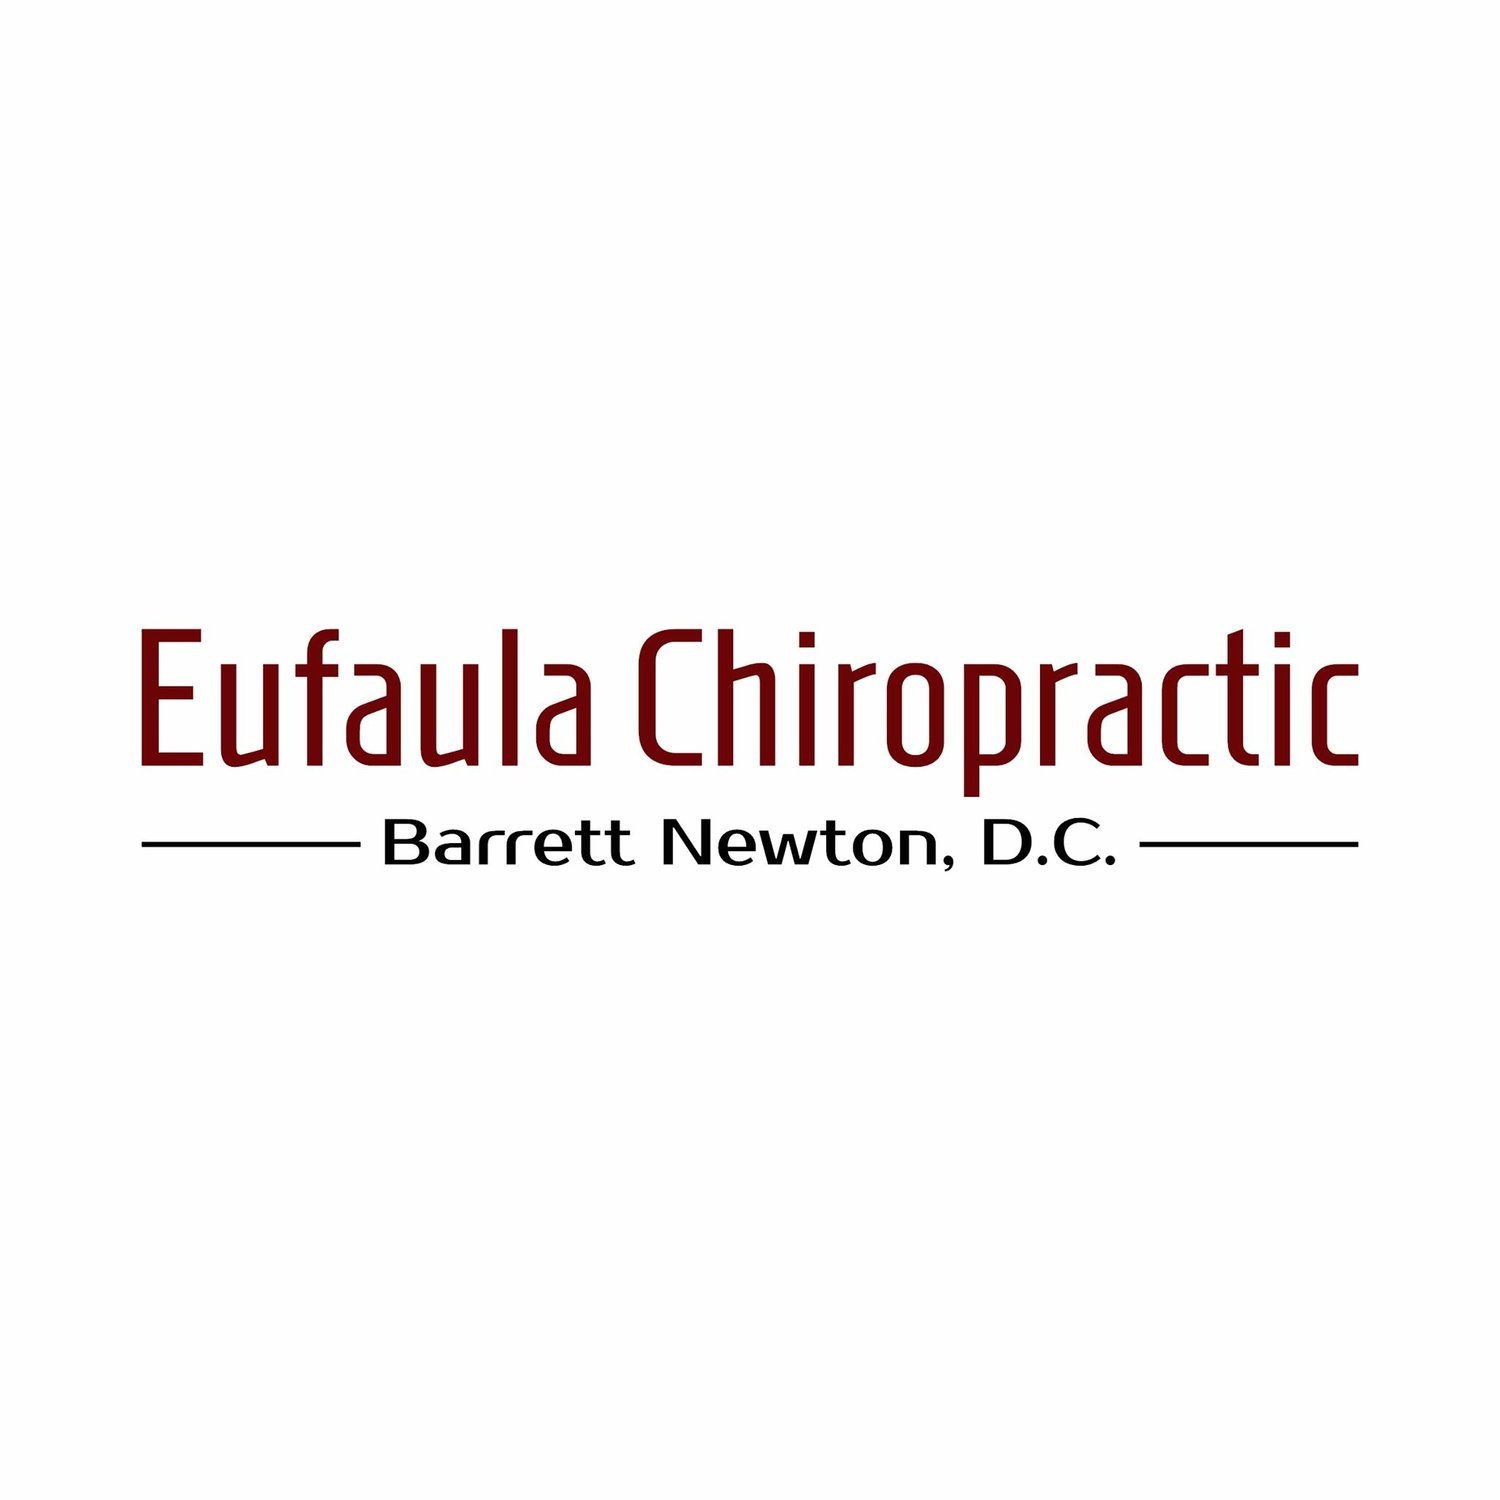 Eufaula Chiropractic